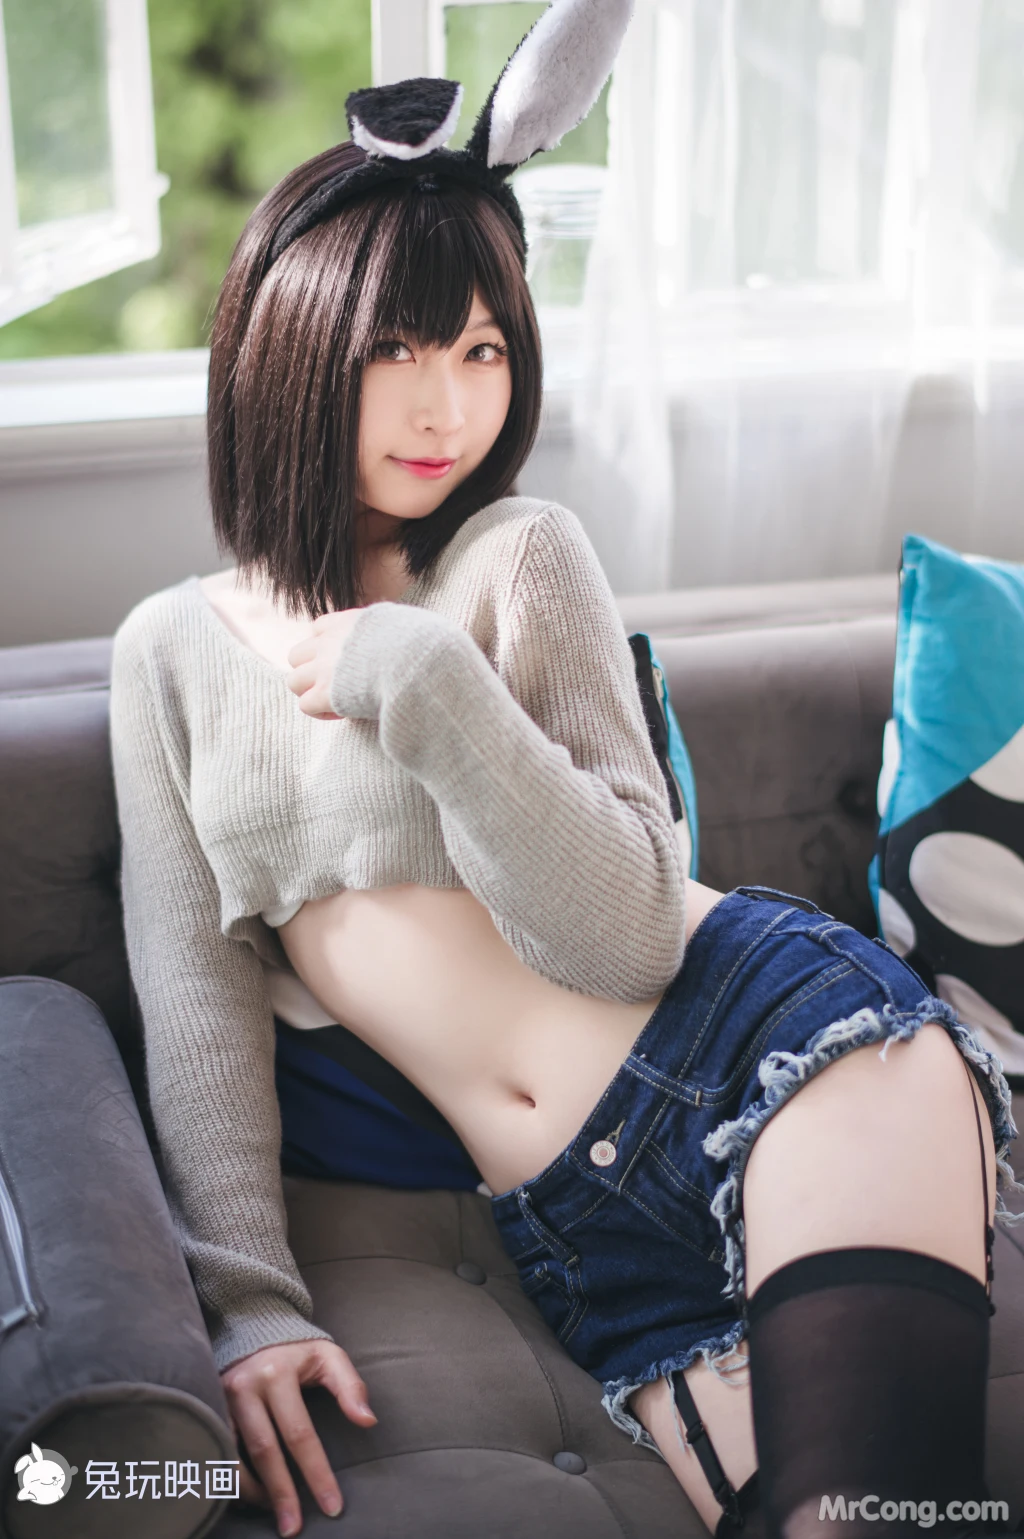 Cosplay@兔玩映画 Vol.041: 毛衣热裤 (40 photos) photo 1-7